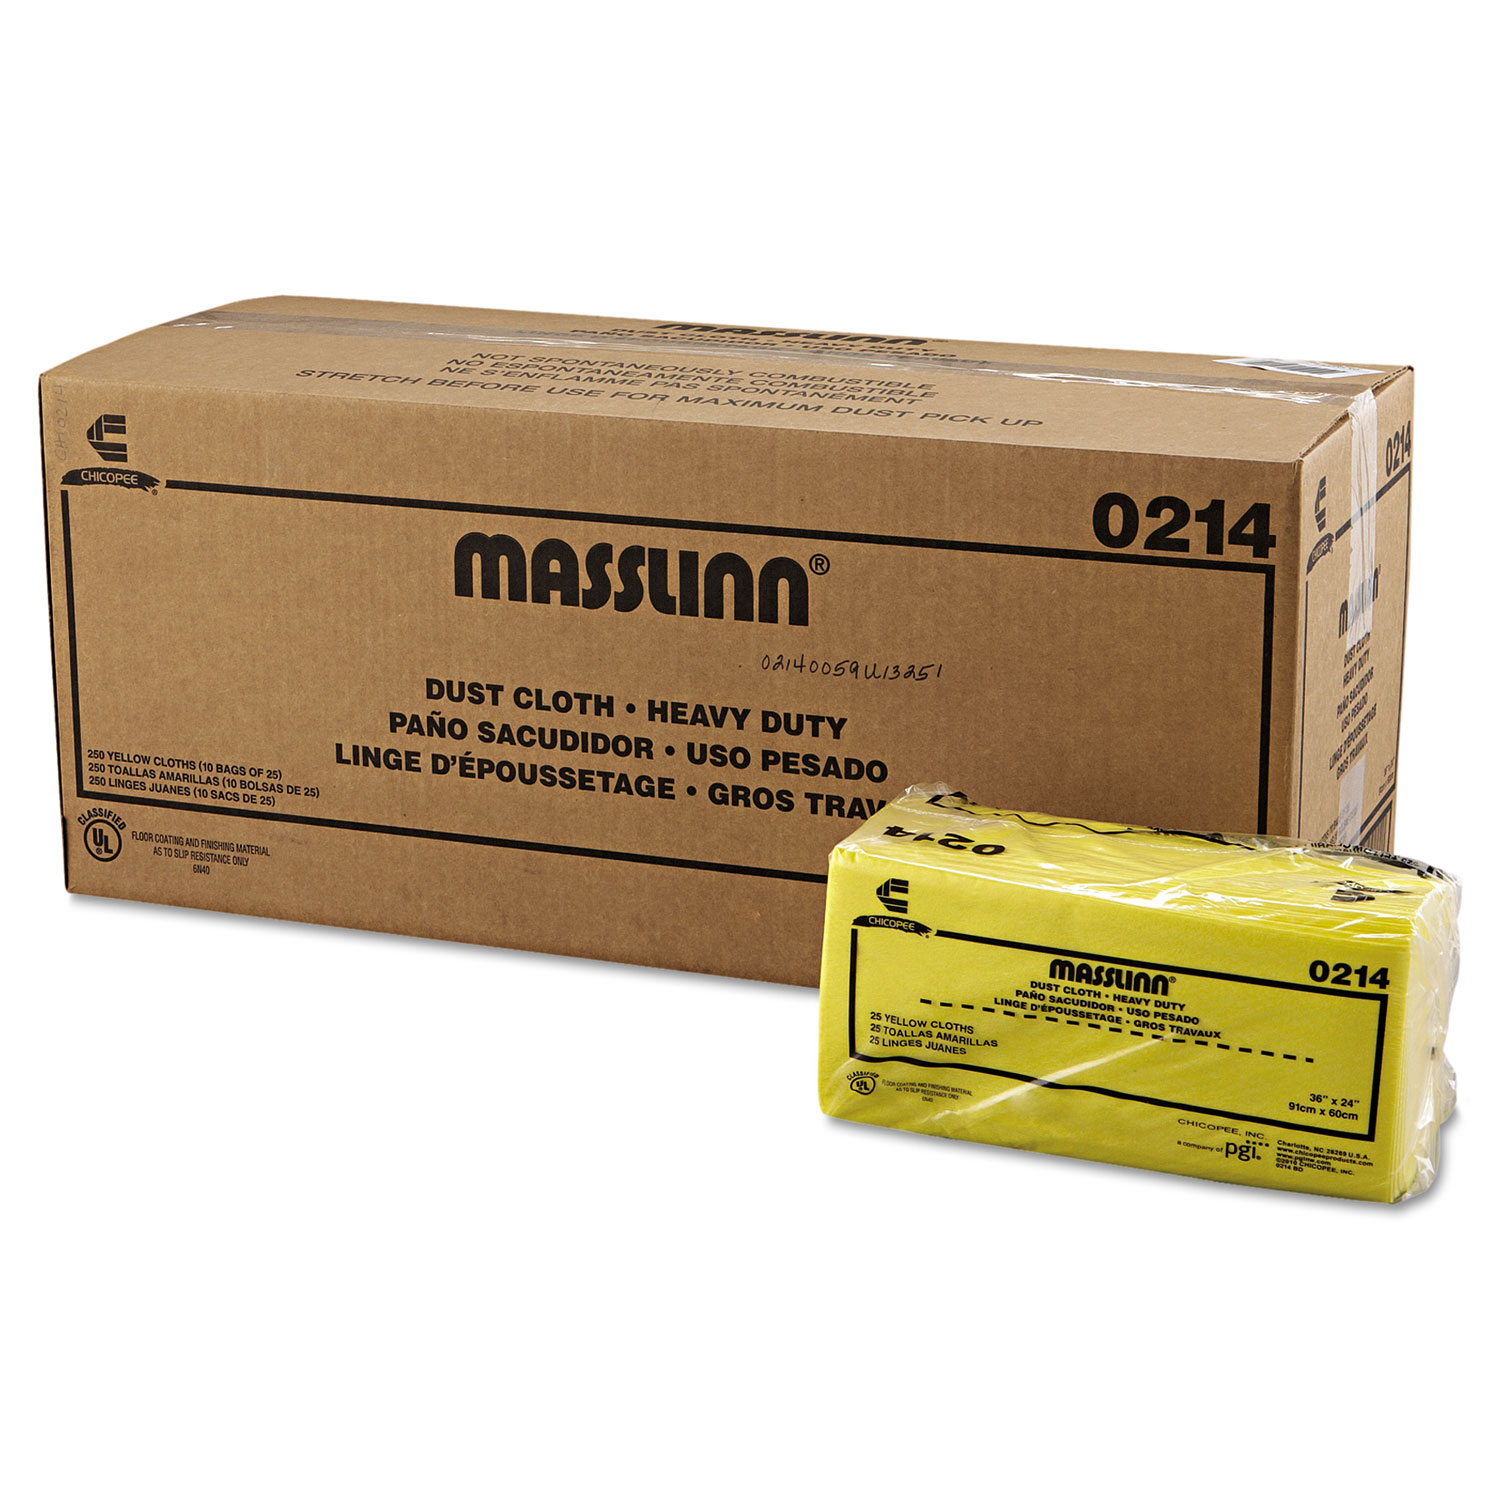 Masslinn Dust Cloths, 40 x 24, Yellow, 250/Carton